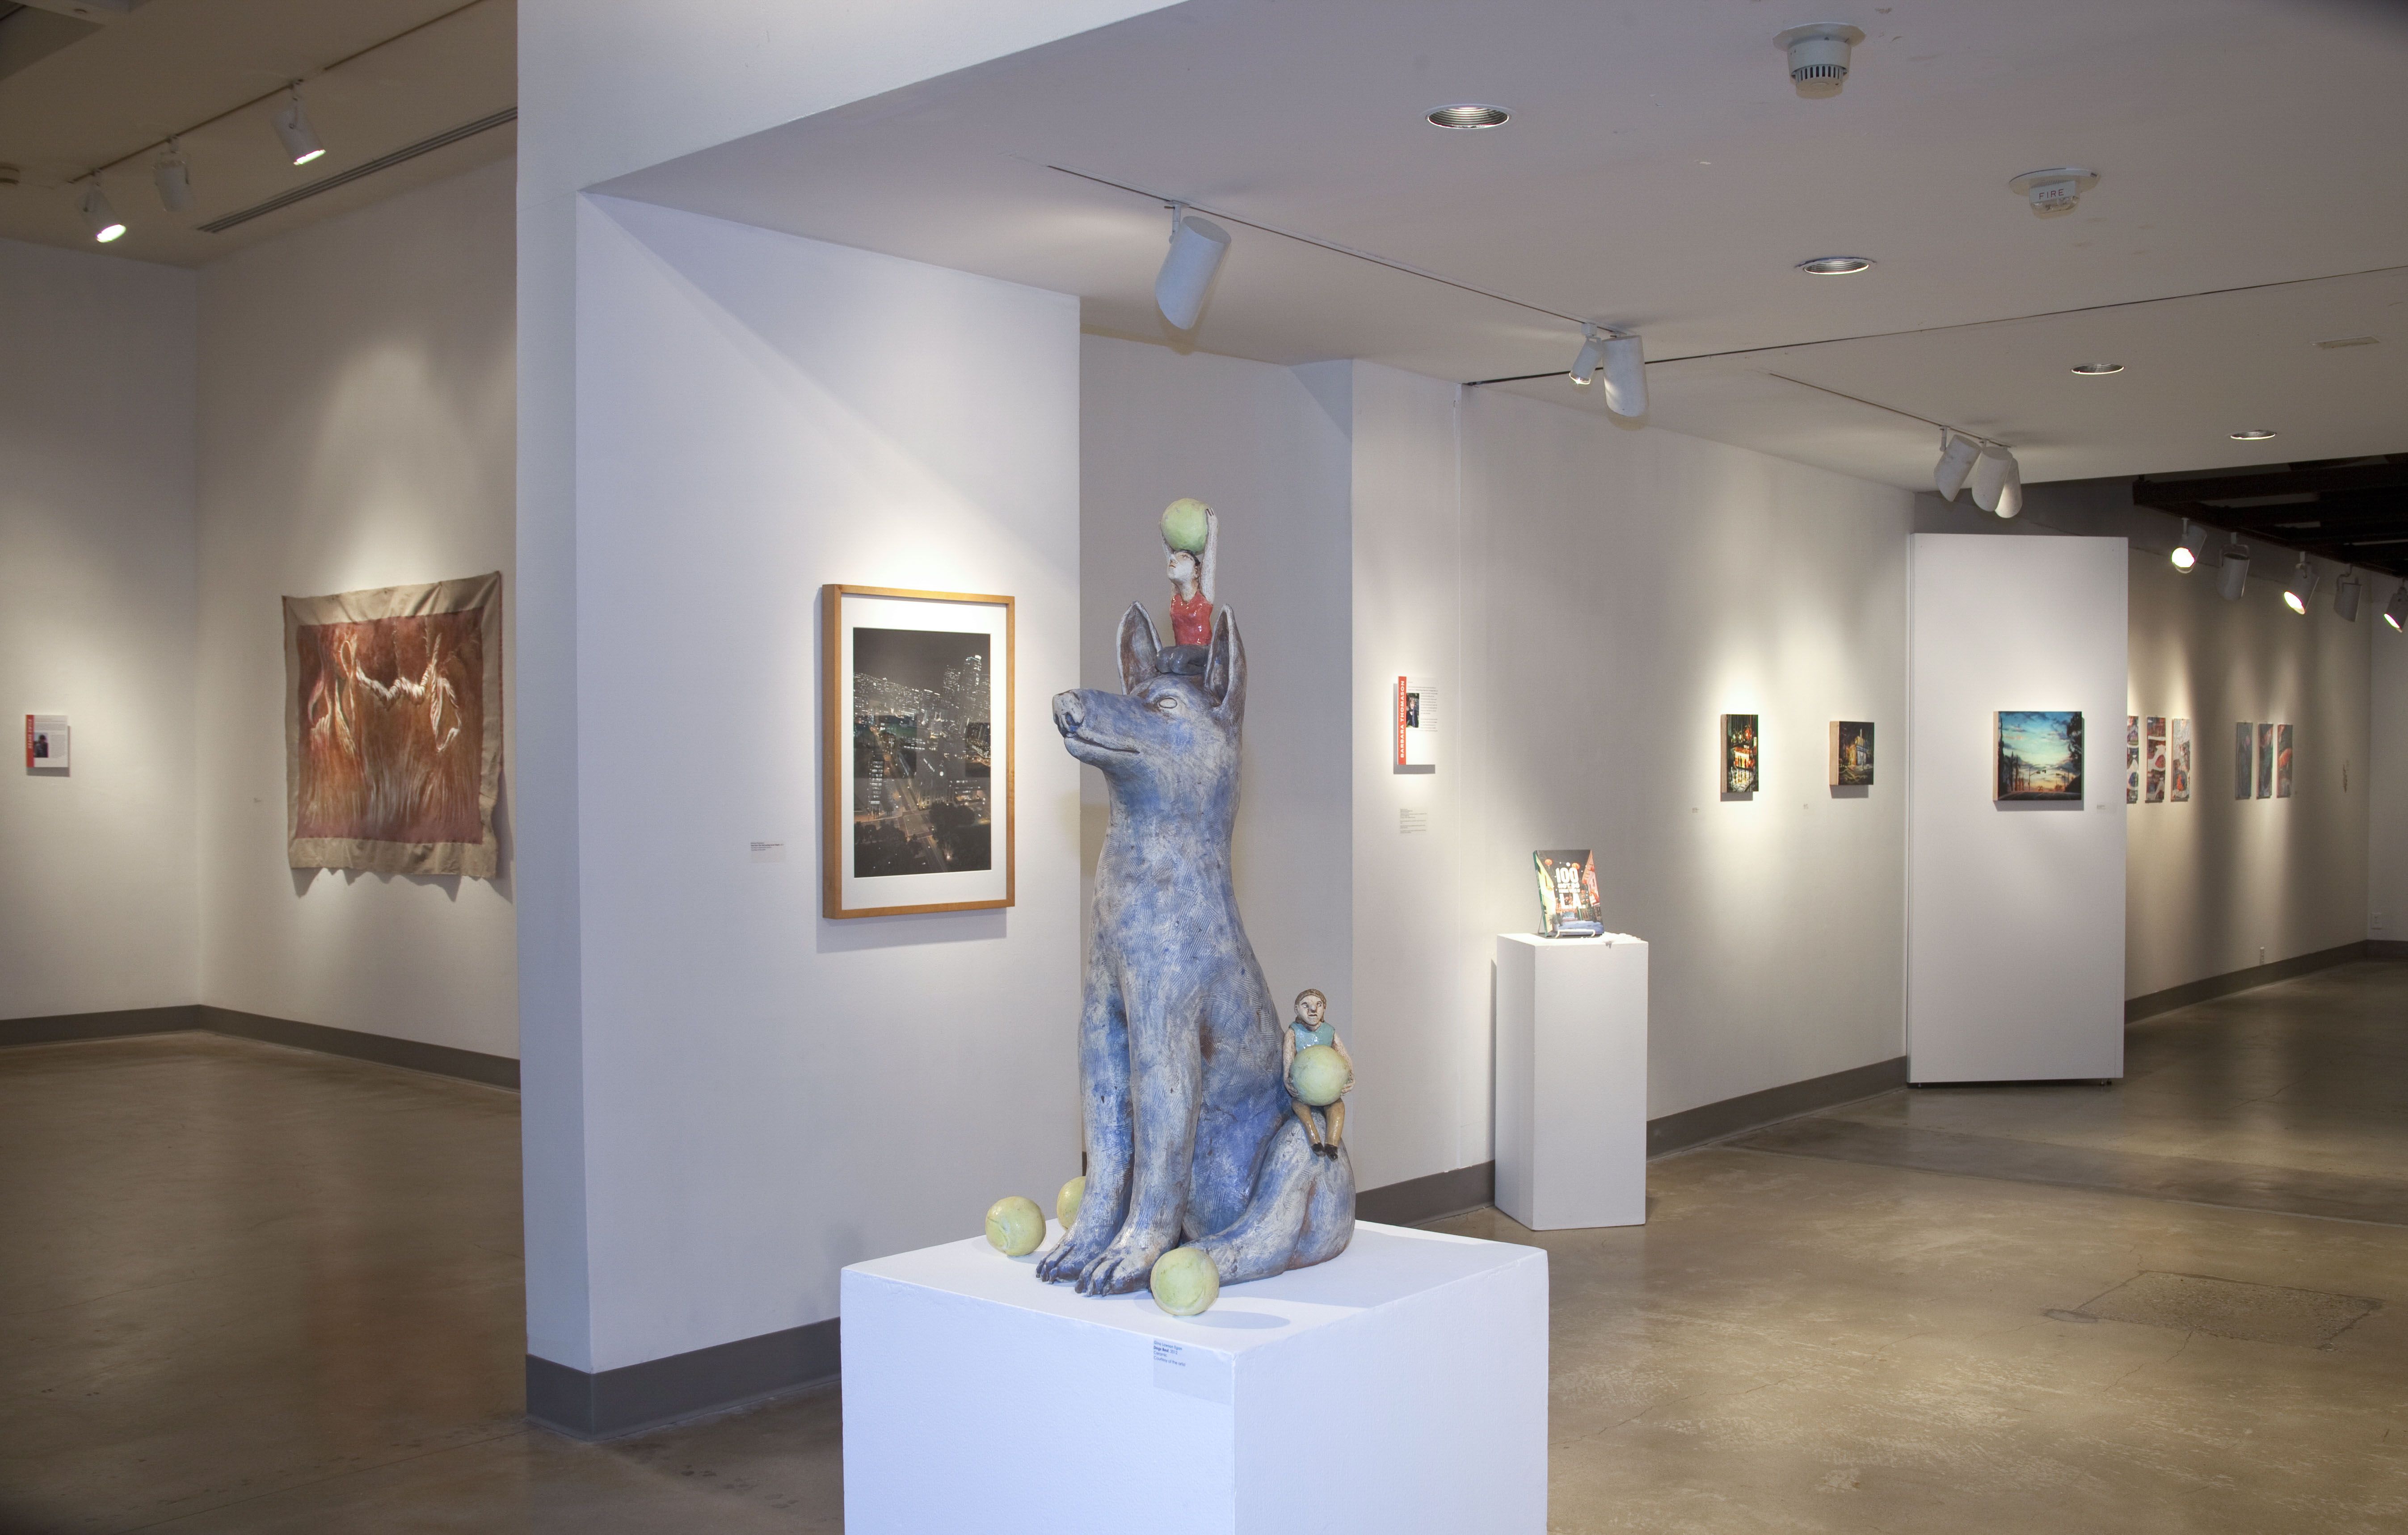 Installation View, Corridor of Gallery, Art Faculty Show 2014 Exhibition, Nov. 10, 2014 to Dec. 13, 2014.